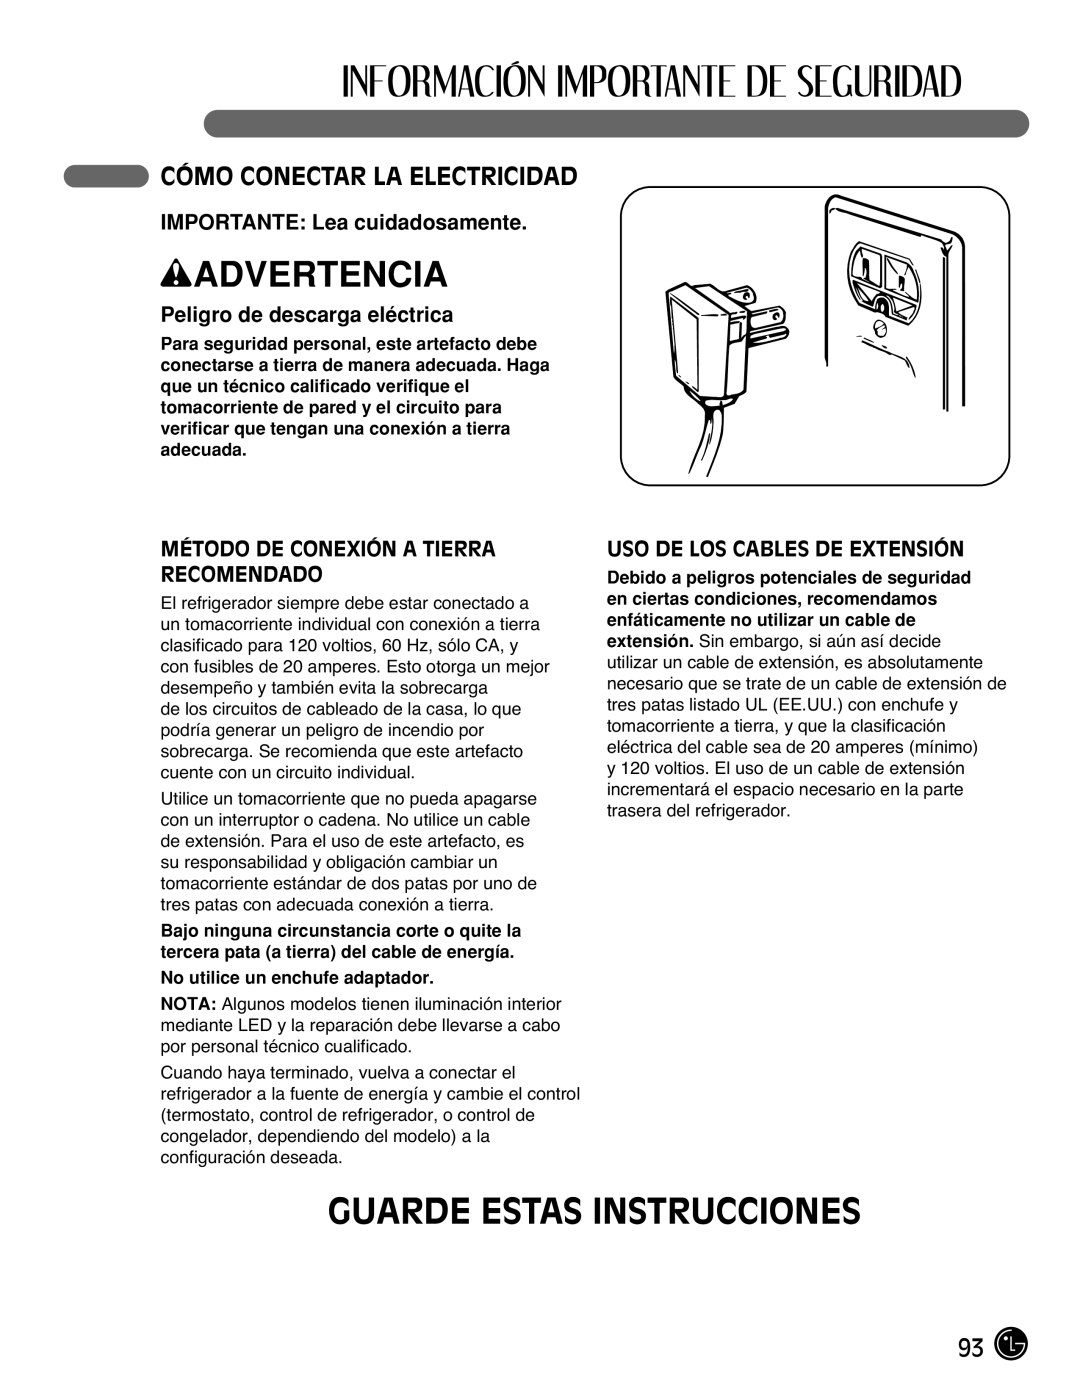 LG Electronics LMX2525971 manual Guarde Estas Instrucciones, Cómo Conectar La Electricidad, IMPORTANTE: Lea cuidadosamente 